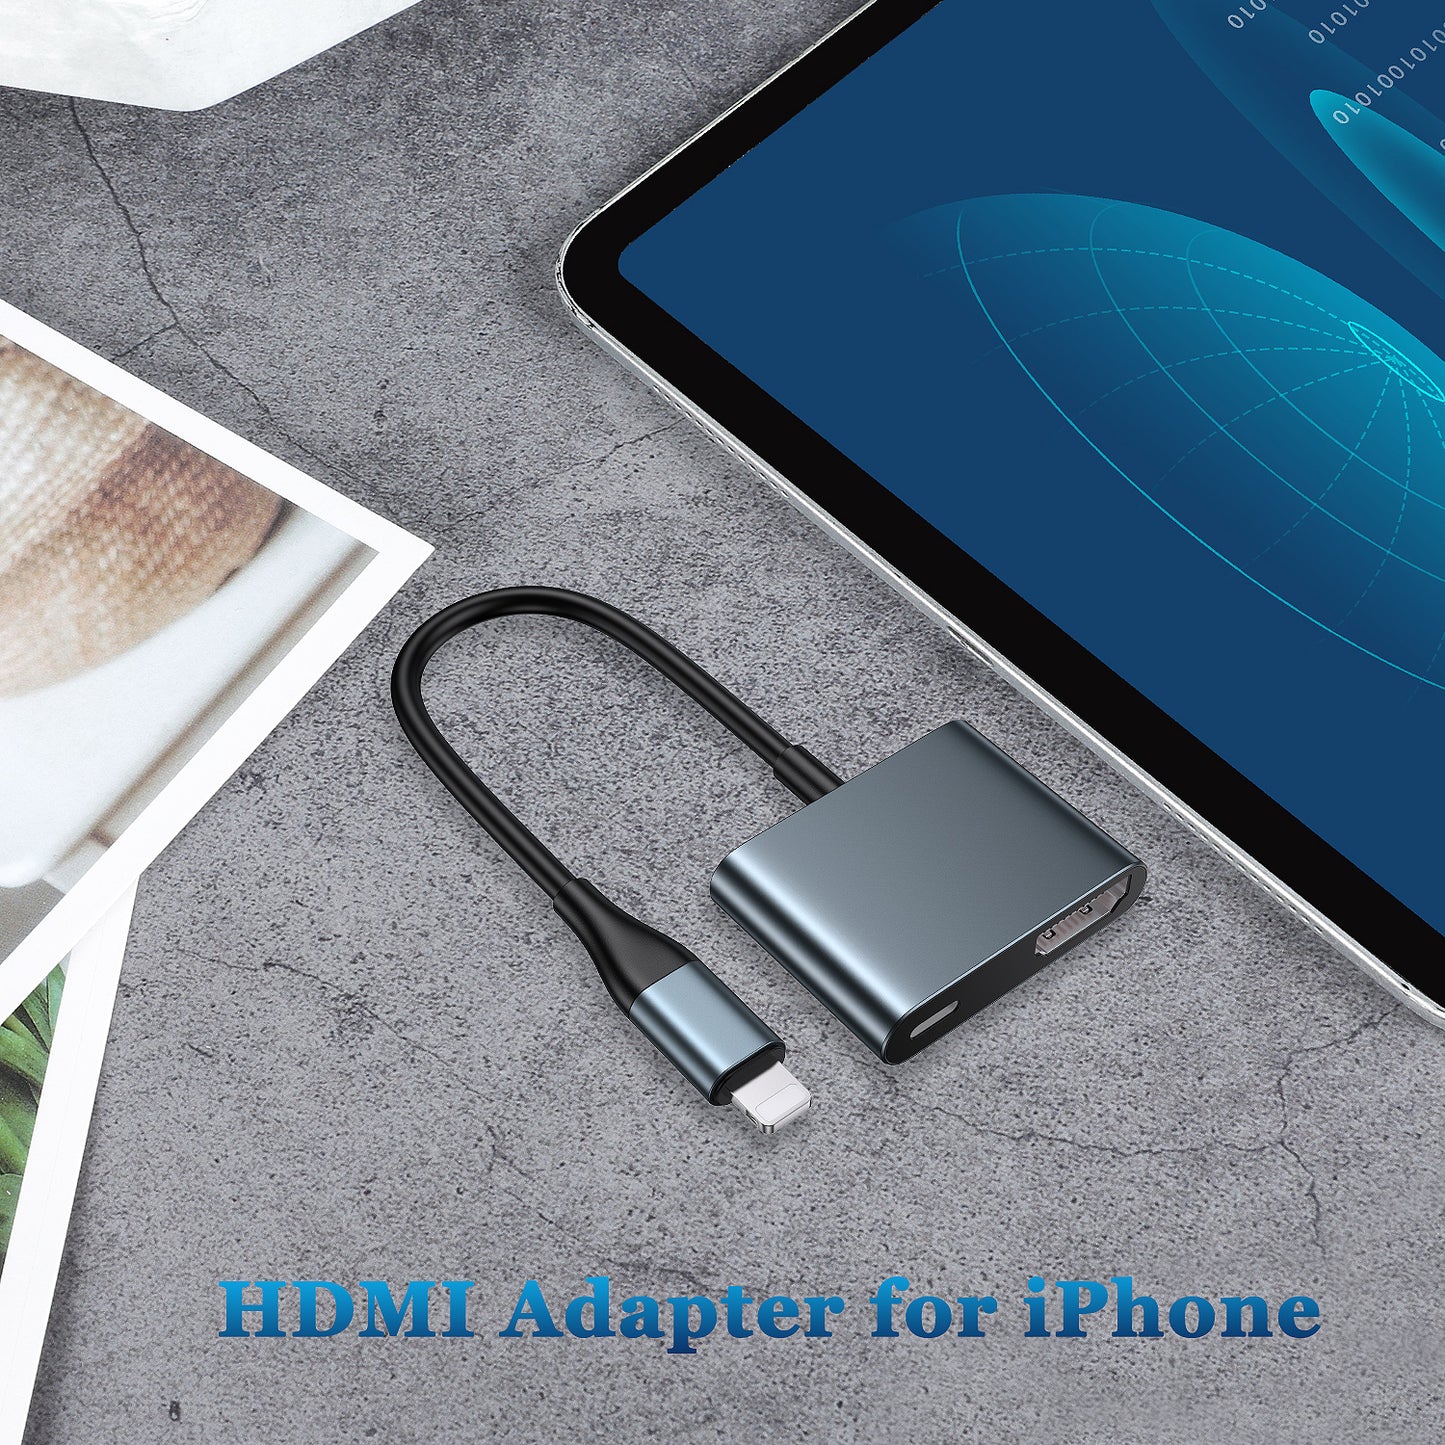 Lightning to HDMI Digital AV Adapter [1080P HD Video HDMI Sync Screen] - Lulaven